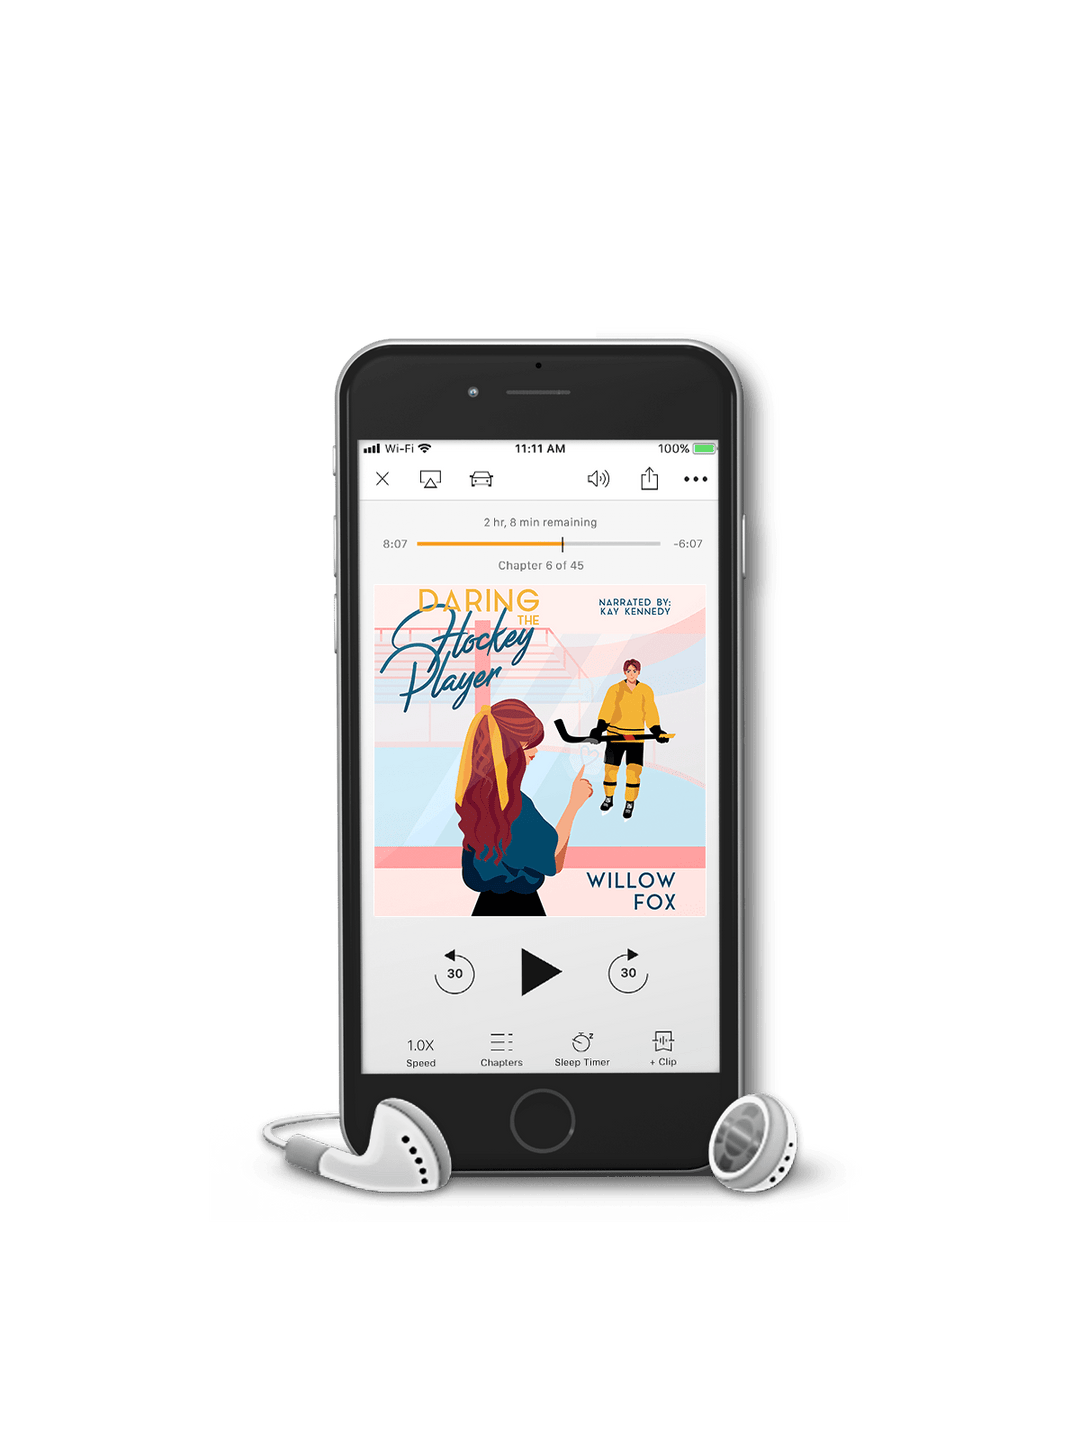 Author Willow Fox audiobooks Daring the Hockey Player (Audiobook)